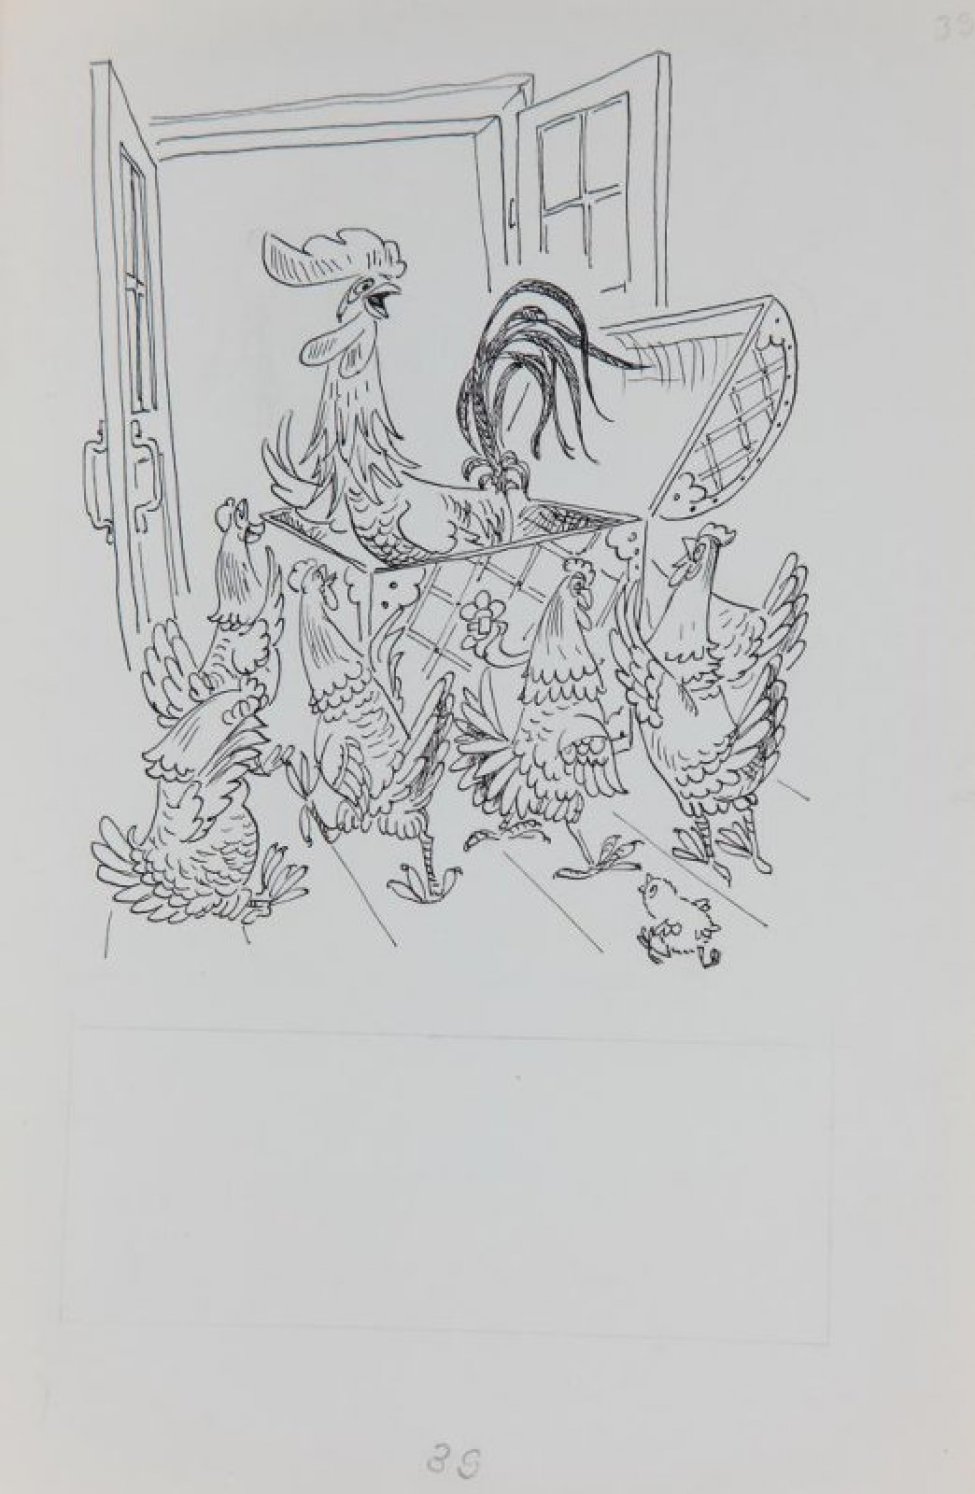 Стилизованное изображение: на фоне распахнутой двери на дощатом полу - сундук с петухом, вокруг 6 кур и цыпленок. В нижней части - разметка карандашом для текста.